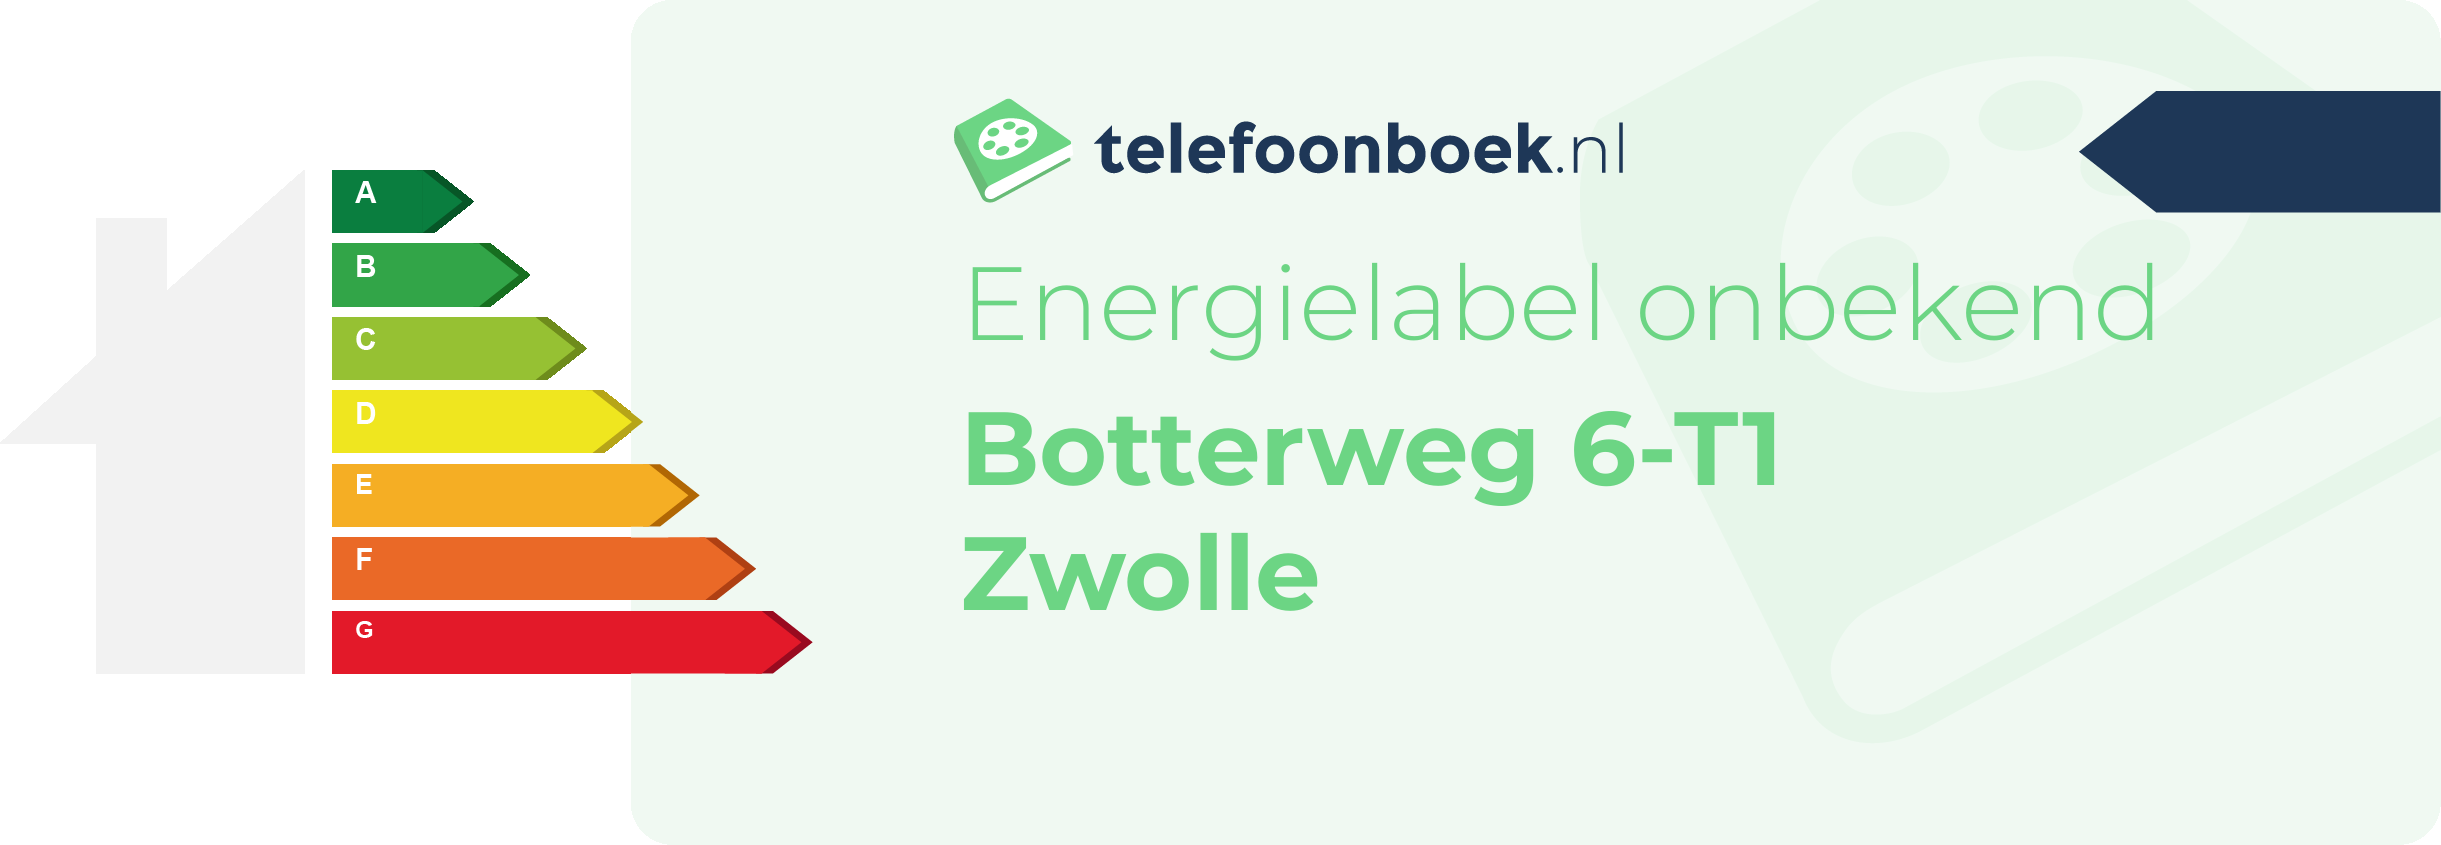 Energielabel Botterweg 6-T1 Zwolle